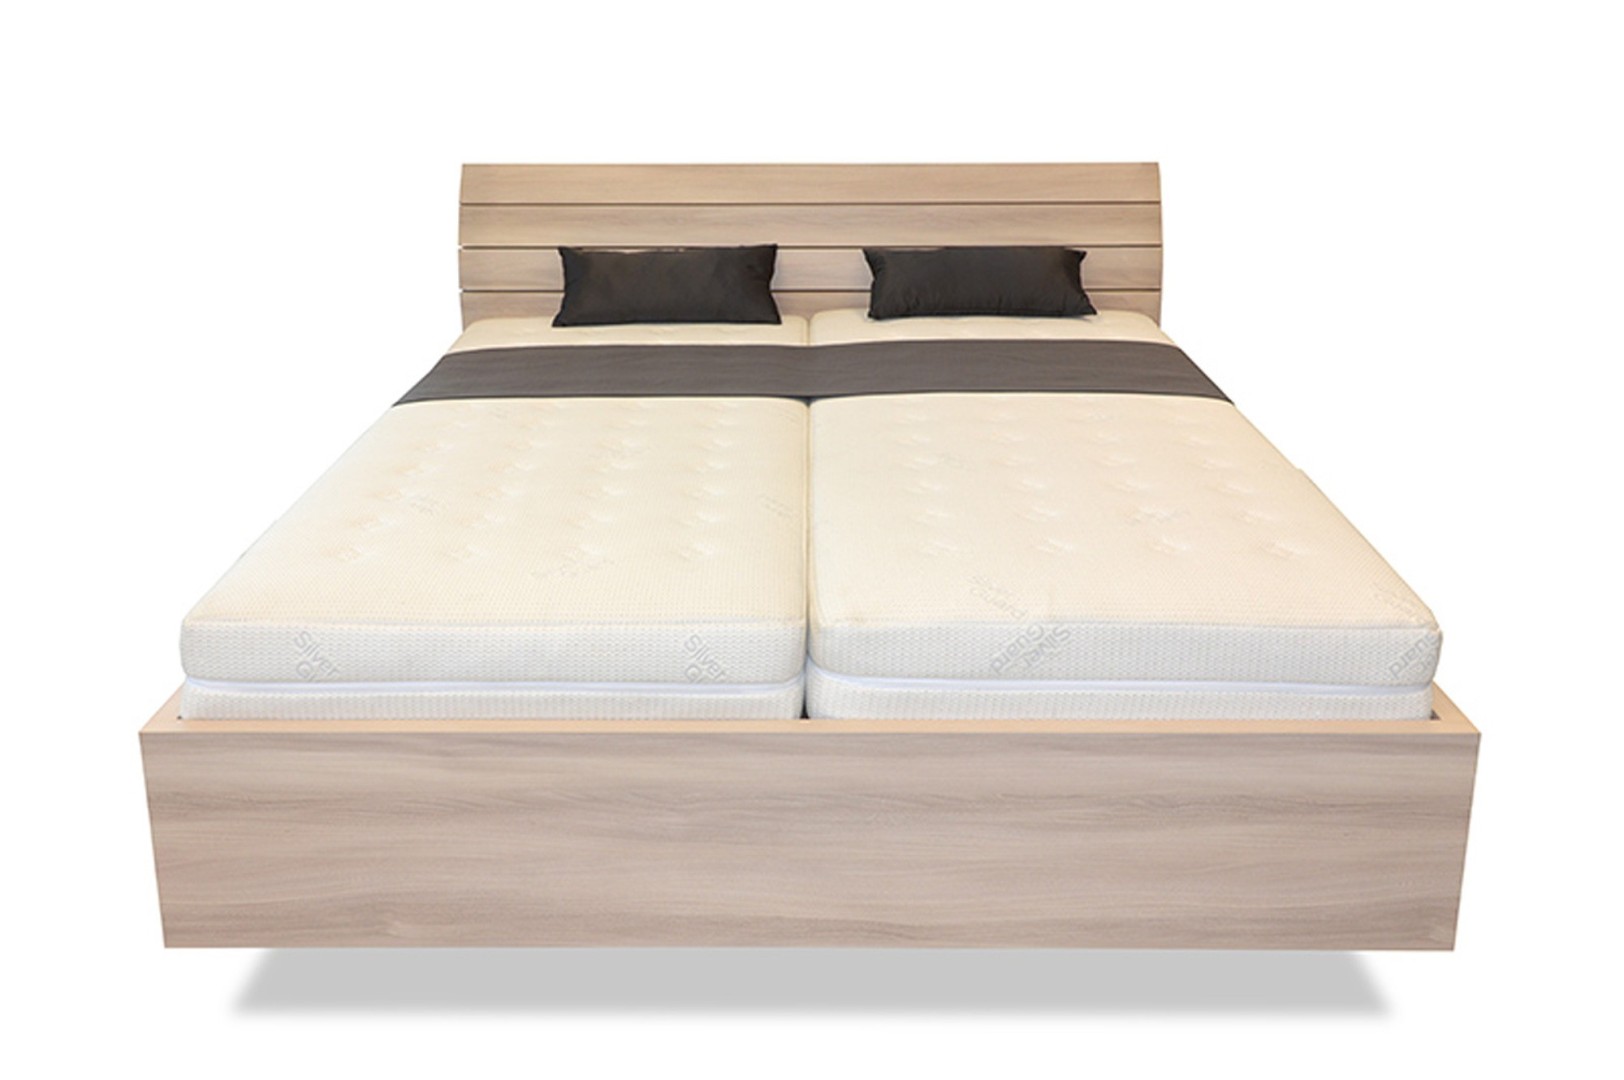 Ahorn SALINA Basic - vznášející se dvoulůžková postel 180 x 190 cm, lamino